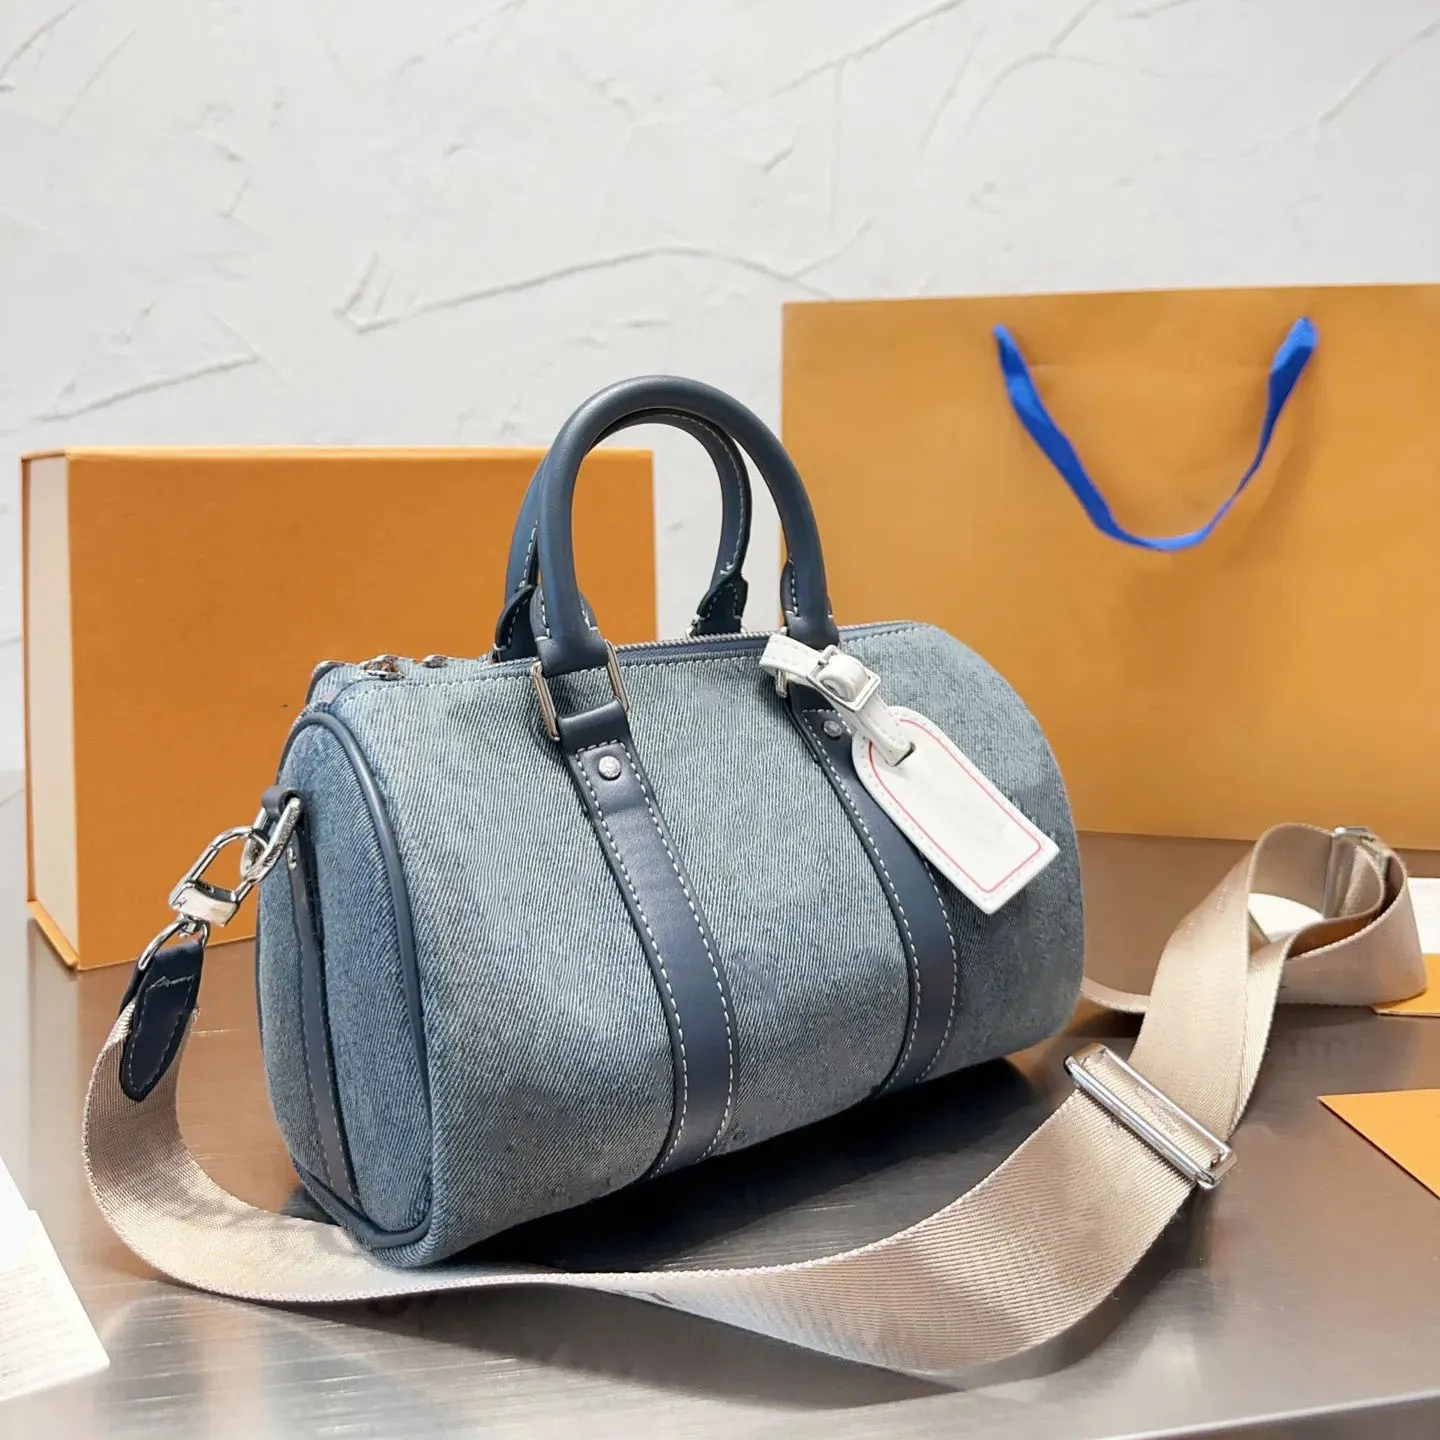 Дизайнерская сумка-подушка, сумка-тоут для мужчин, сумки через плечо для женщин, роскошная сумка-мессенджер Demin, уличный кошелек, дорожная сумка, сумка для телефона, кошелек, поясная сумка, портфель